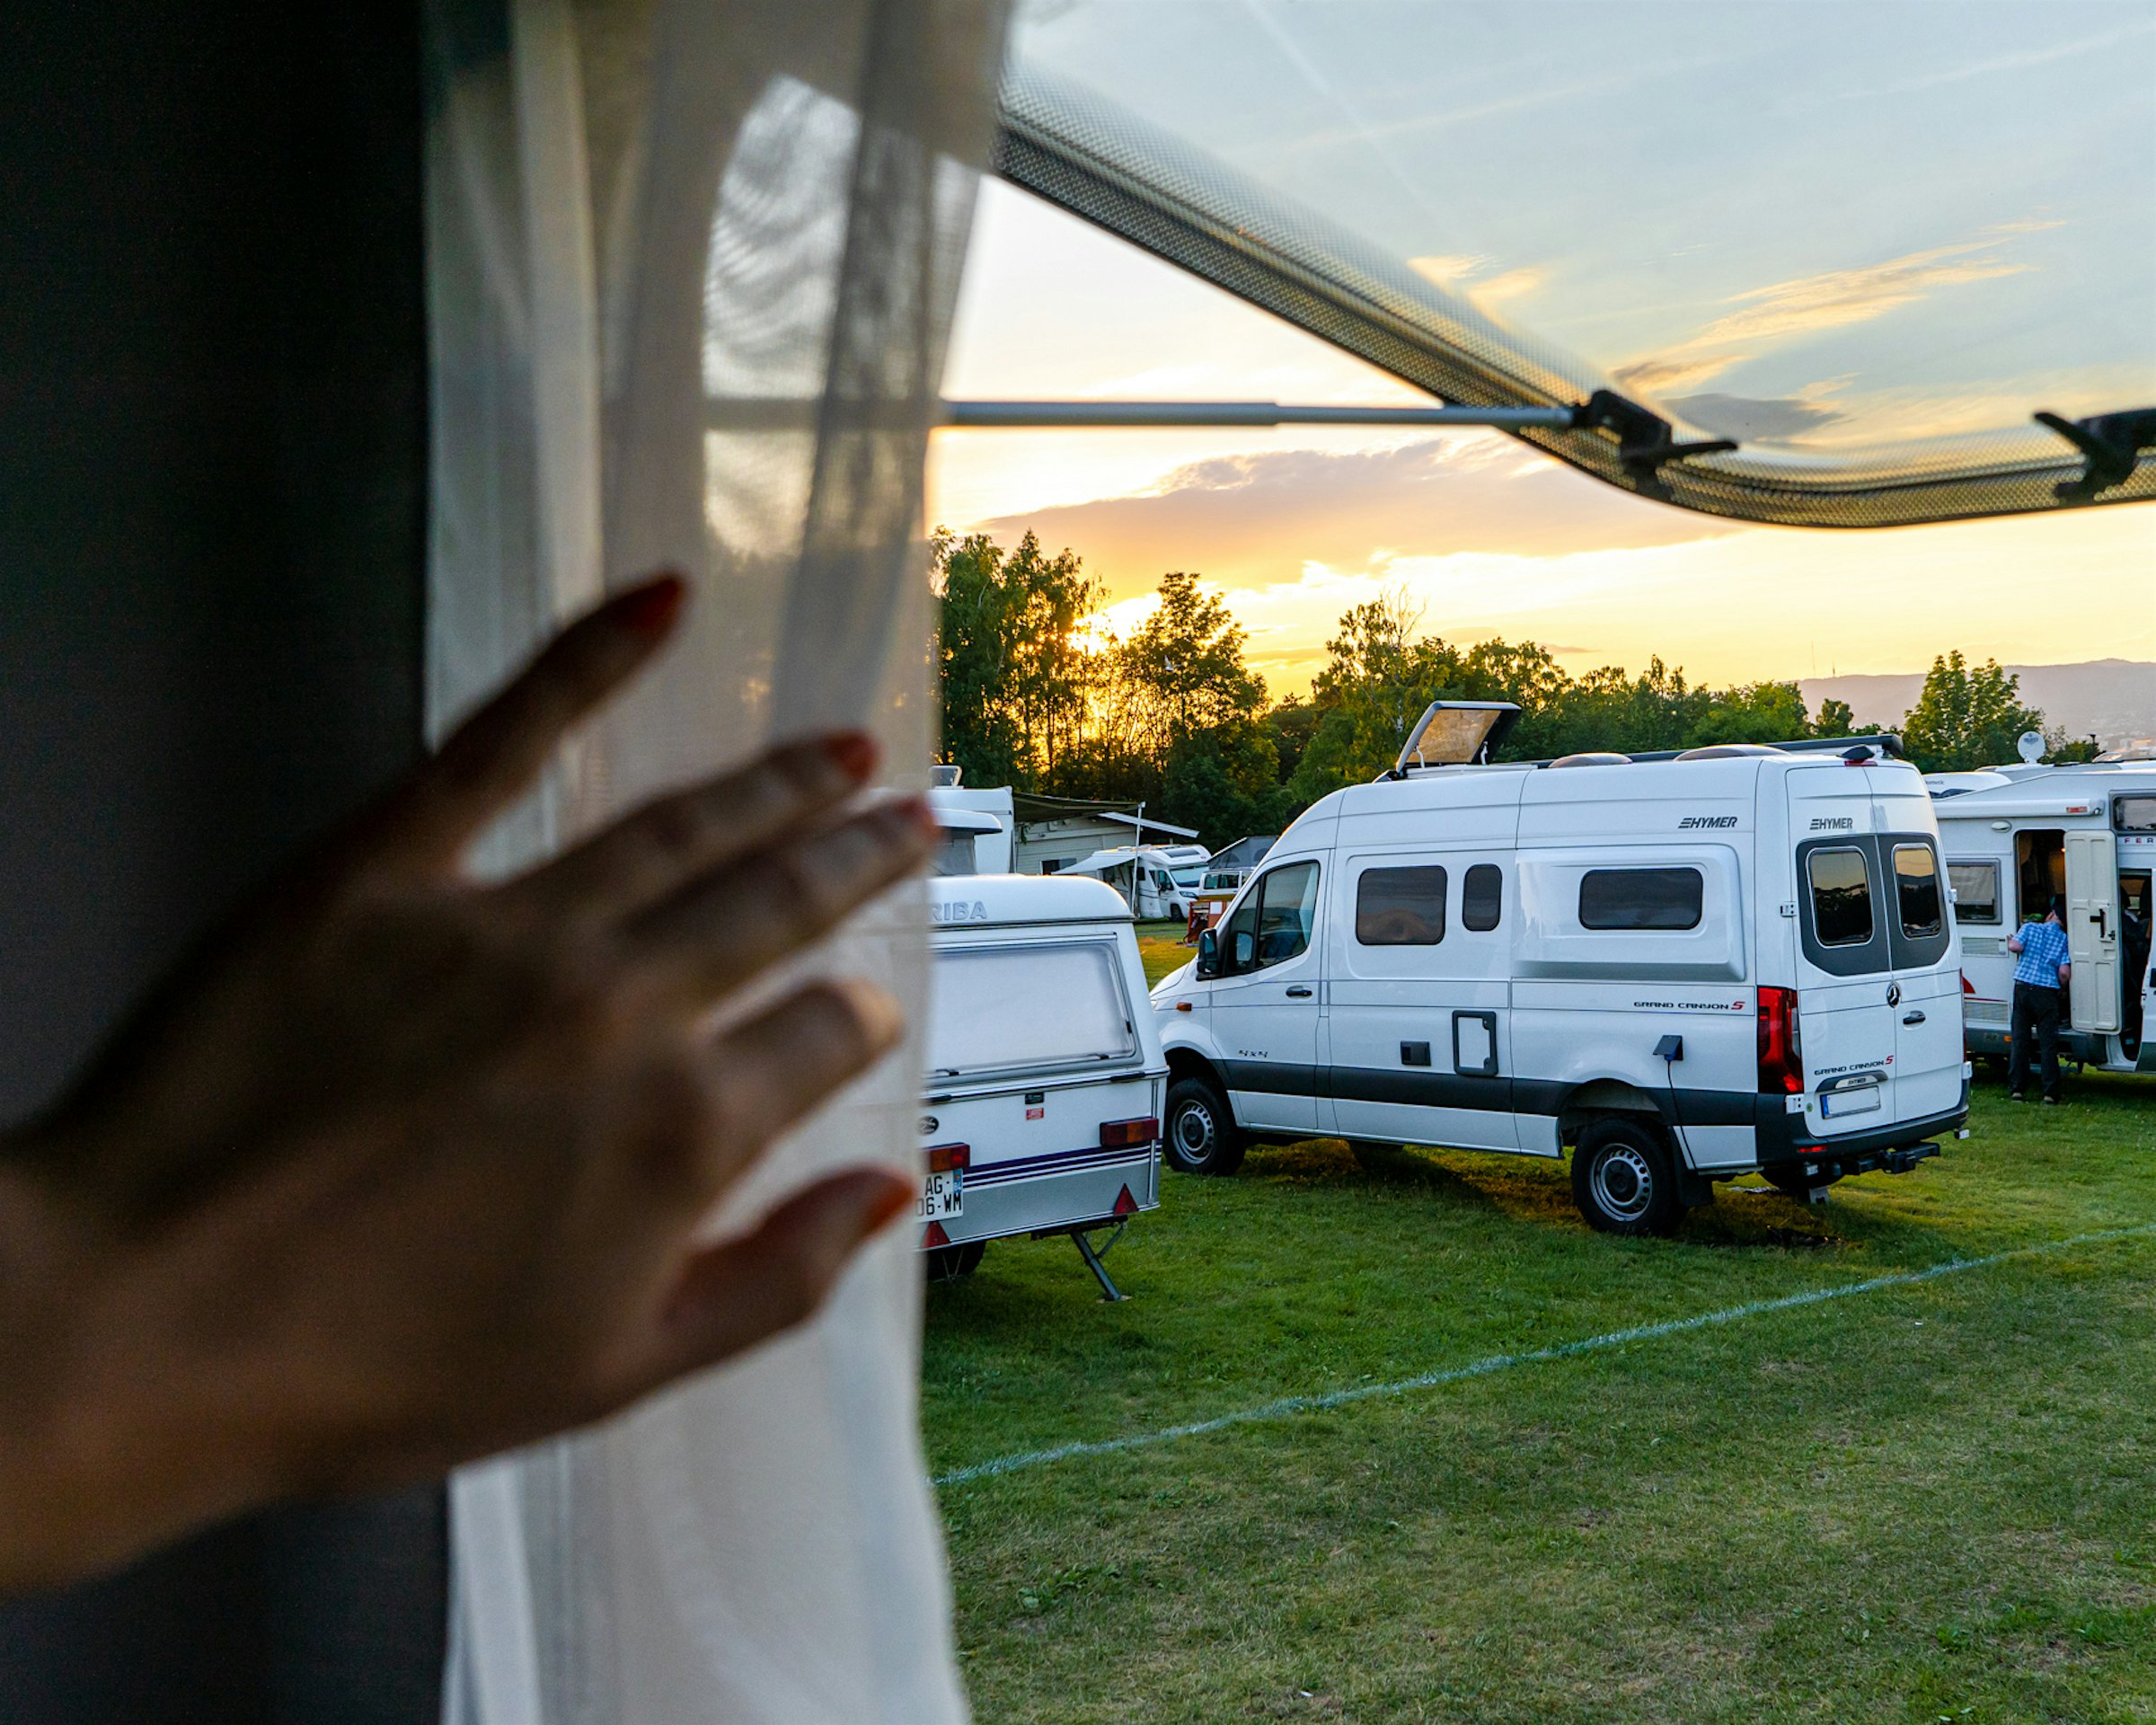 Hånd skyver tynn gardin til siden i campingvinduet. Man ser utover campingbiler på gresslette i solnedgang.